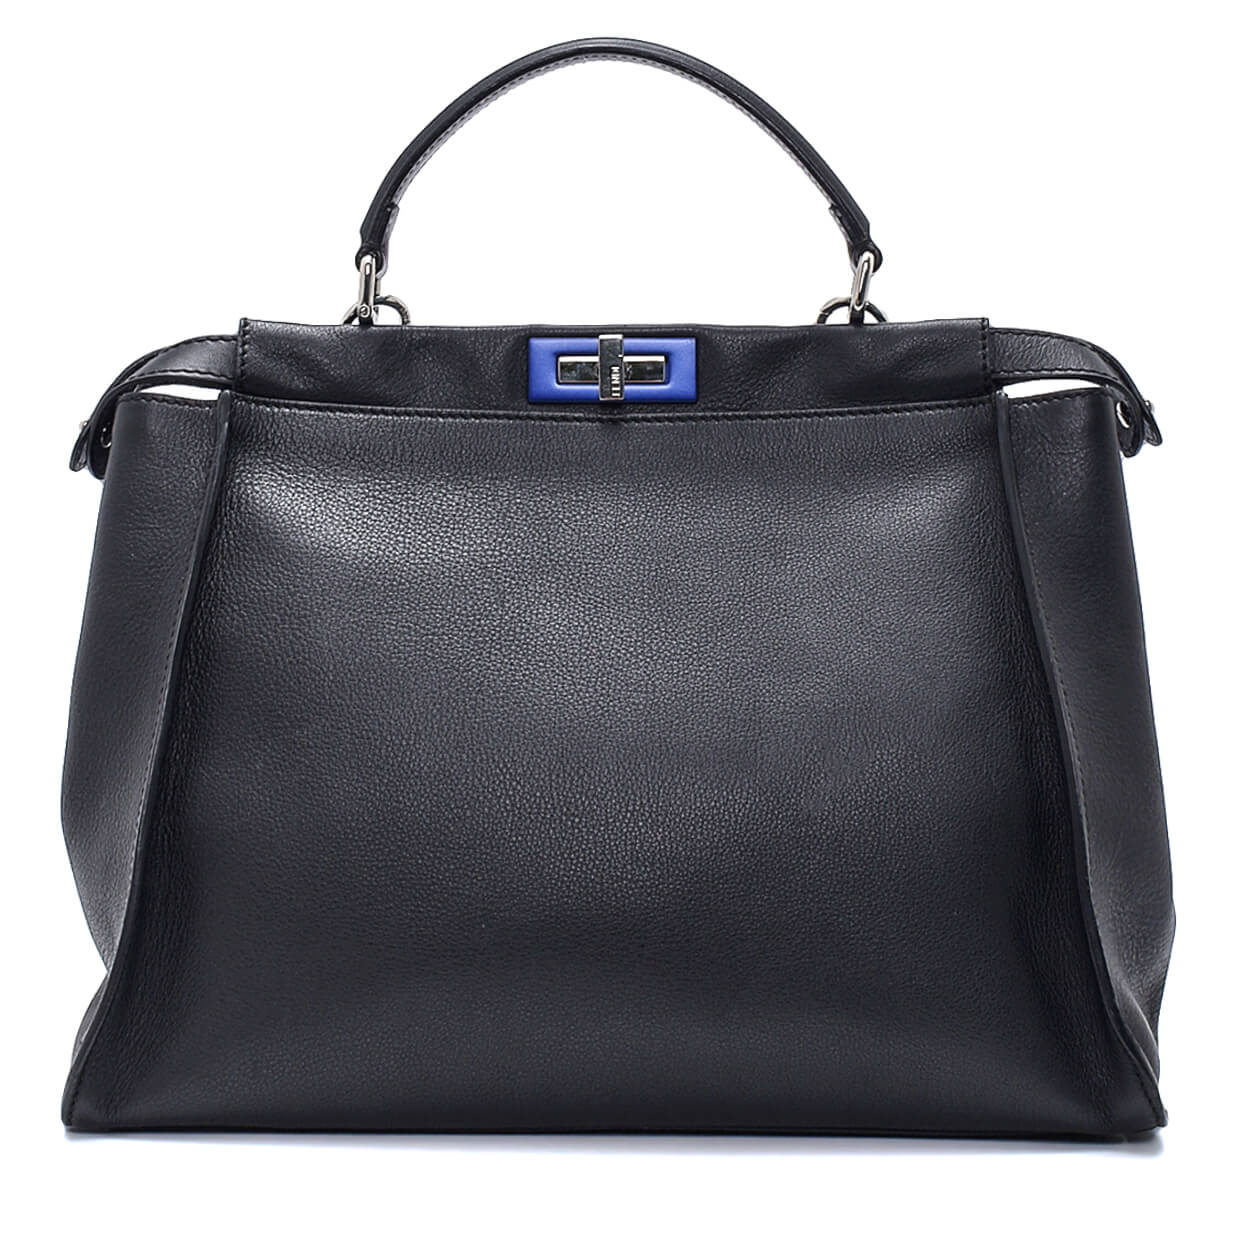 Fendi - Black Leather & Blue Twist Lock Peekaboo Large Bag